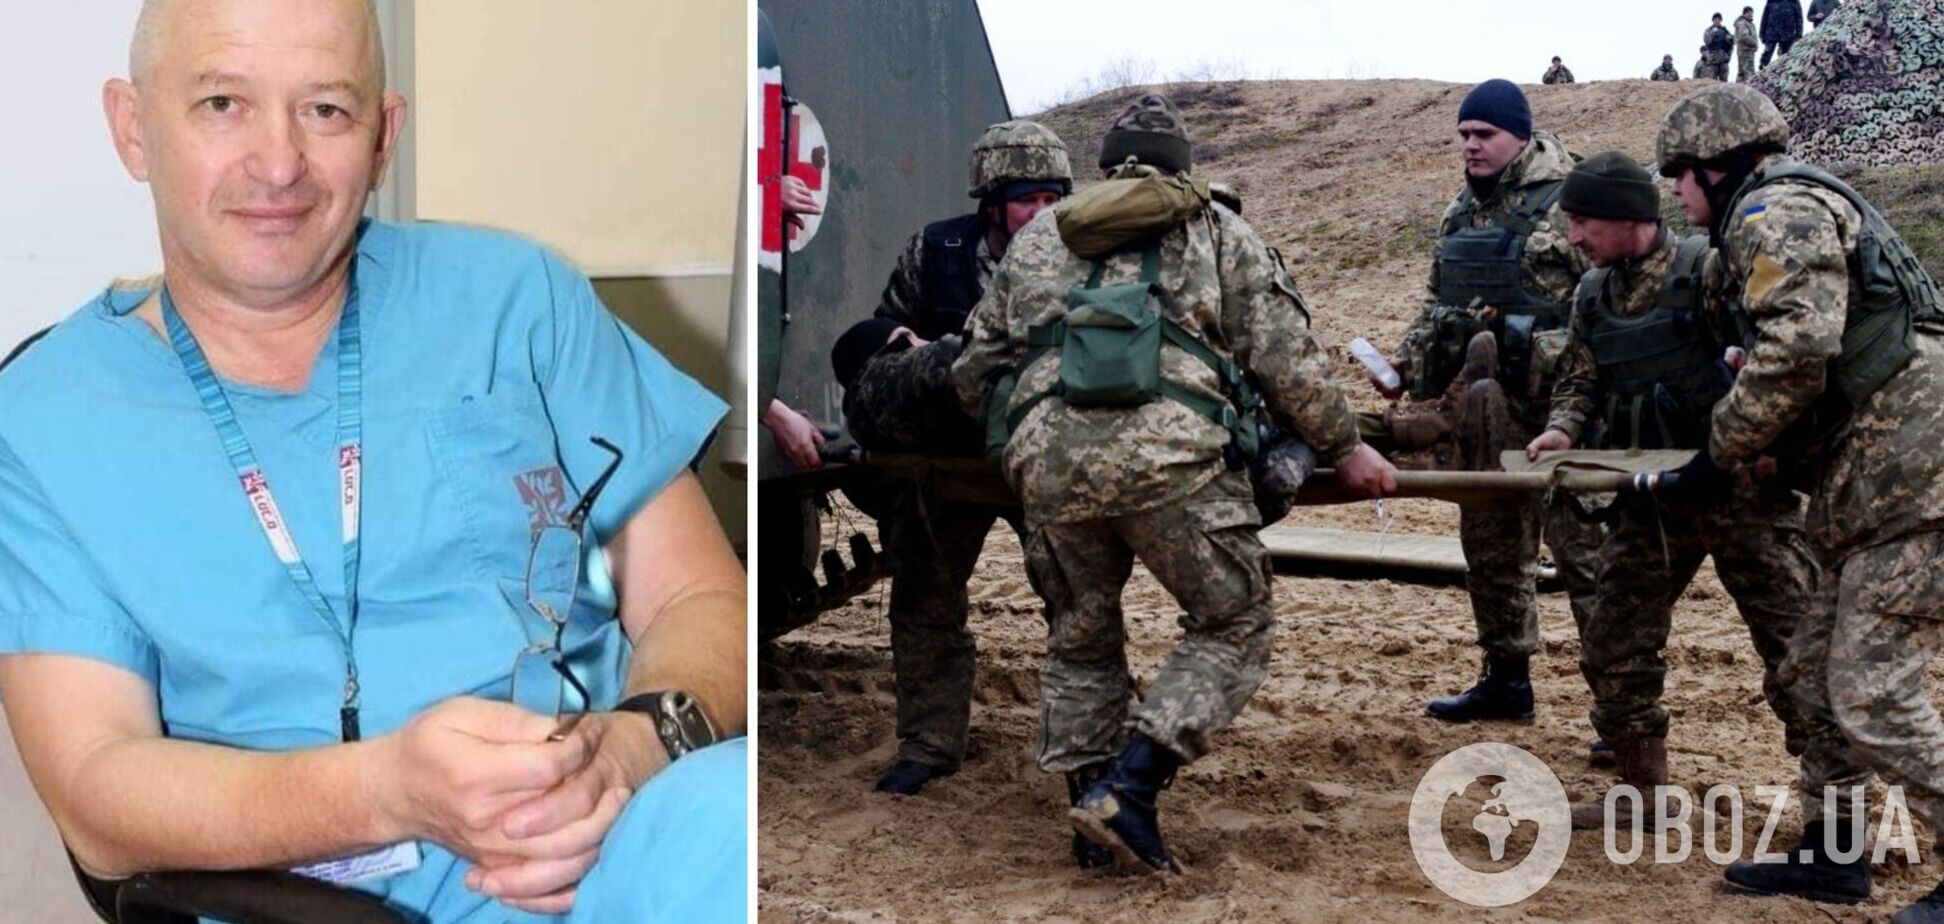 Профессор из Израиля помог спасти украинского боевого офицера с тяжелым ранением: пришлось найти непростое решение